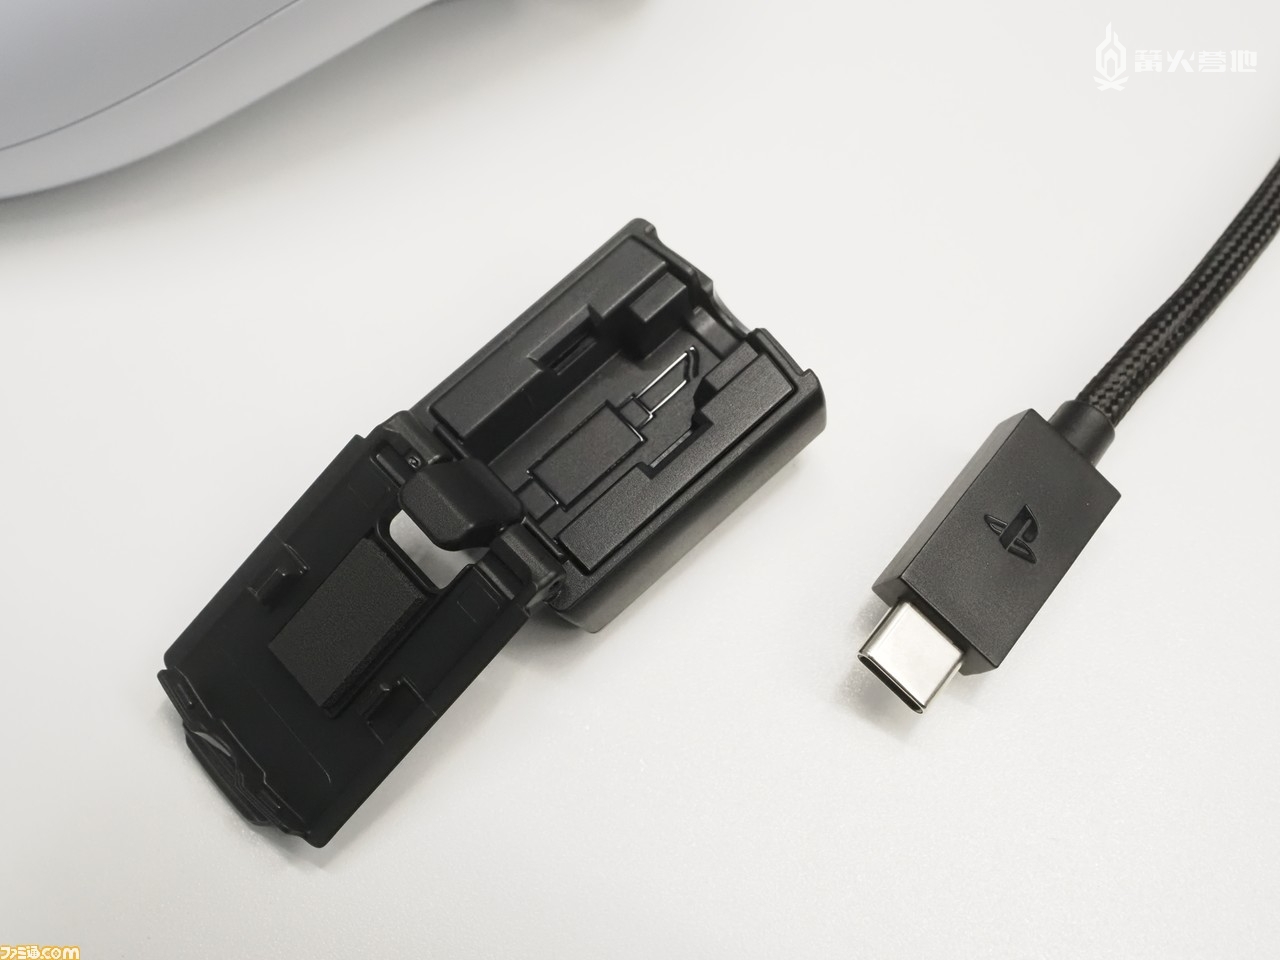 购入 DualSense Edge 附赠的 USB Type-C 数据线长达 2.8 米。图中左侧呈打开状的装置就是连接保护头，与 USB 数据线连接后能够有效防止端口弯折和连接脱落